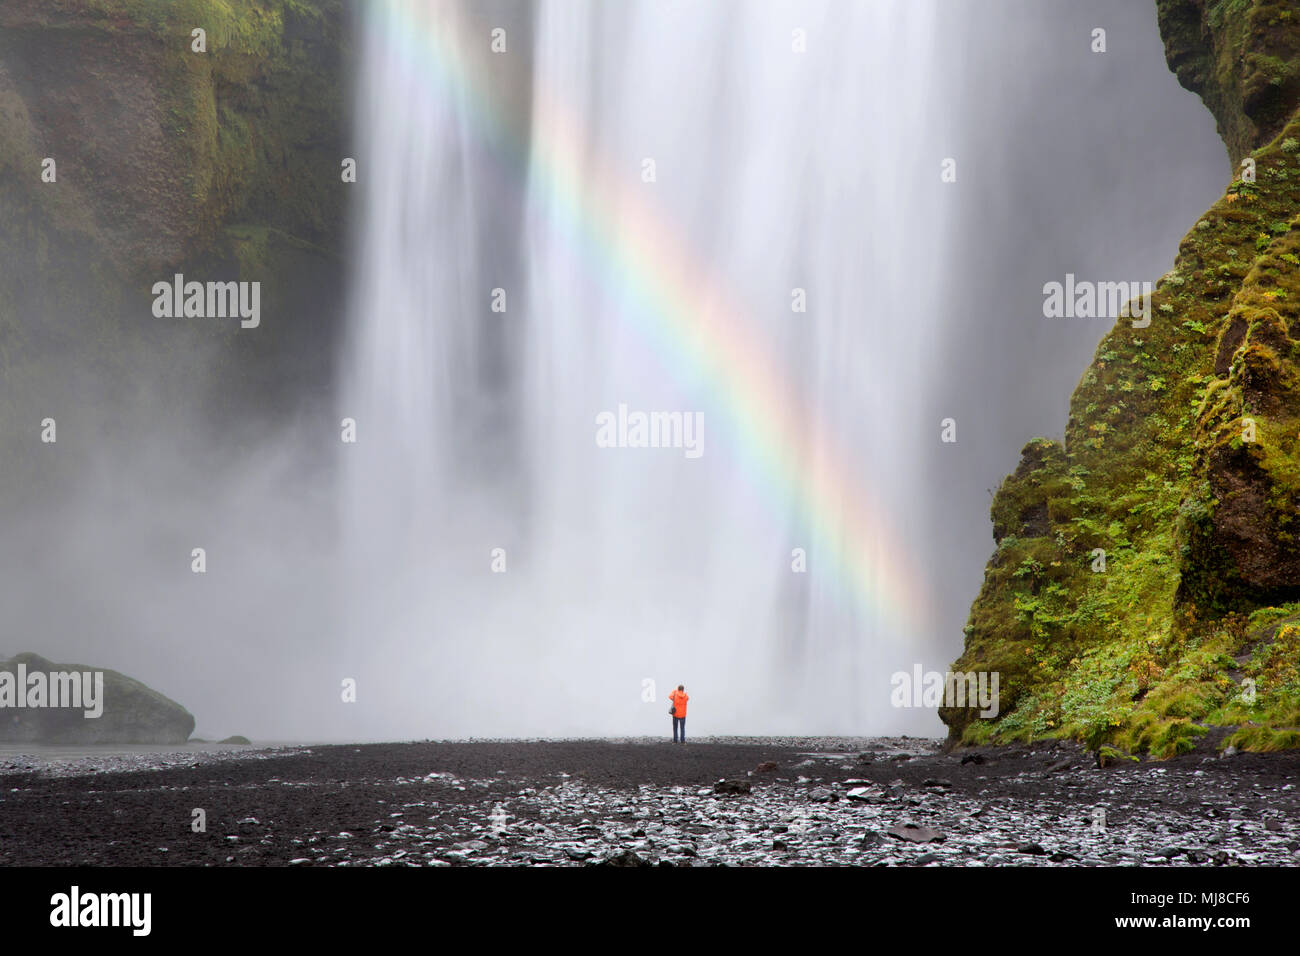 Vista posteriore della persona in piedi al piede della cascata, moss-coperta di rocce e cascate. Foto Stock